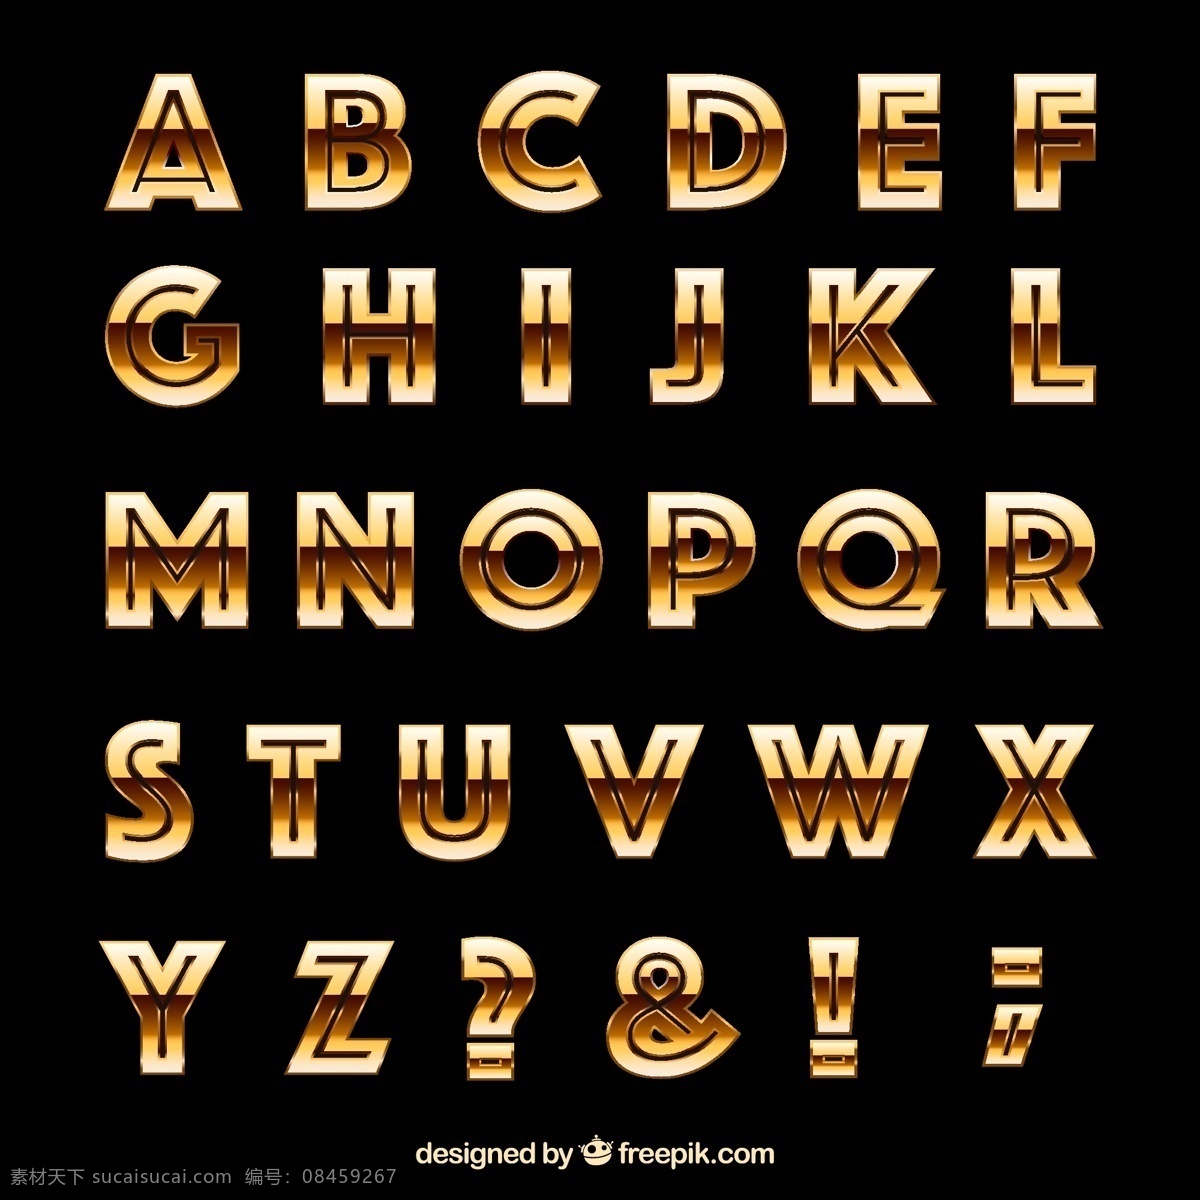 字母设计 手绘字母 彩色字母 26个英文字 大小写 字母标识 拼音 创意字母 字母 英文 英文字母 26个字母 立体字母 卡通字母 动物字母 数字 标点 符号 标点符号 卡通数字 立体数字 阿拉伯数字 平面素材